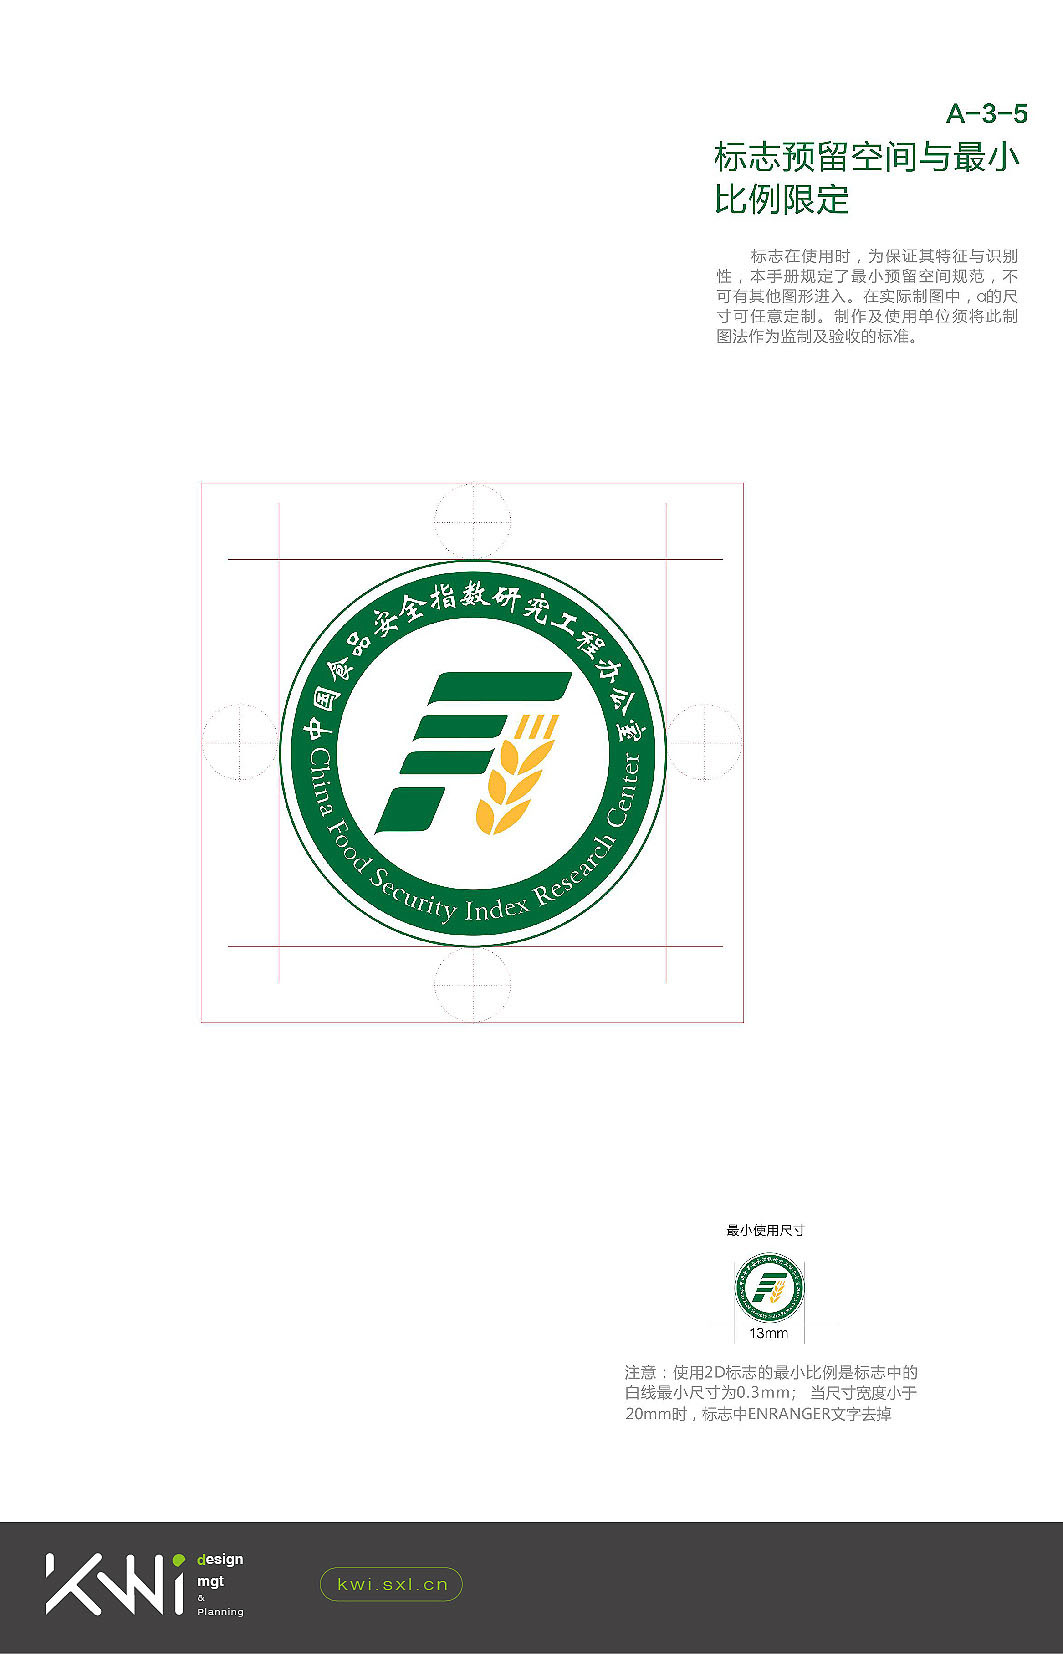 中国食品安全指数研究办公室logo/VI设计图3